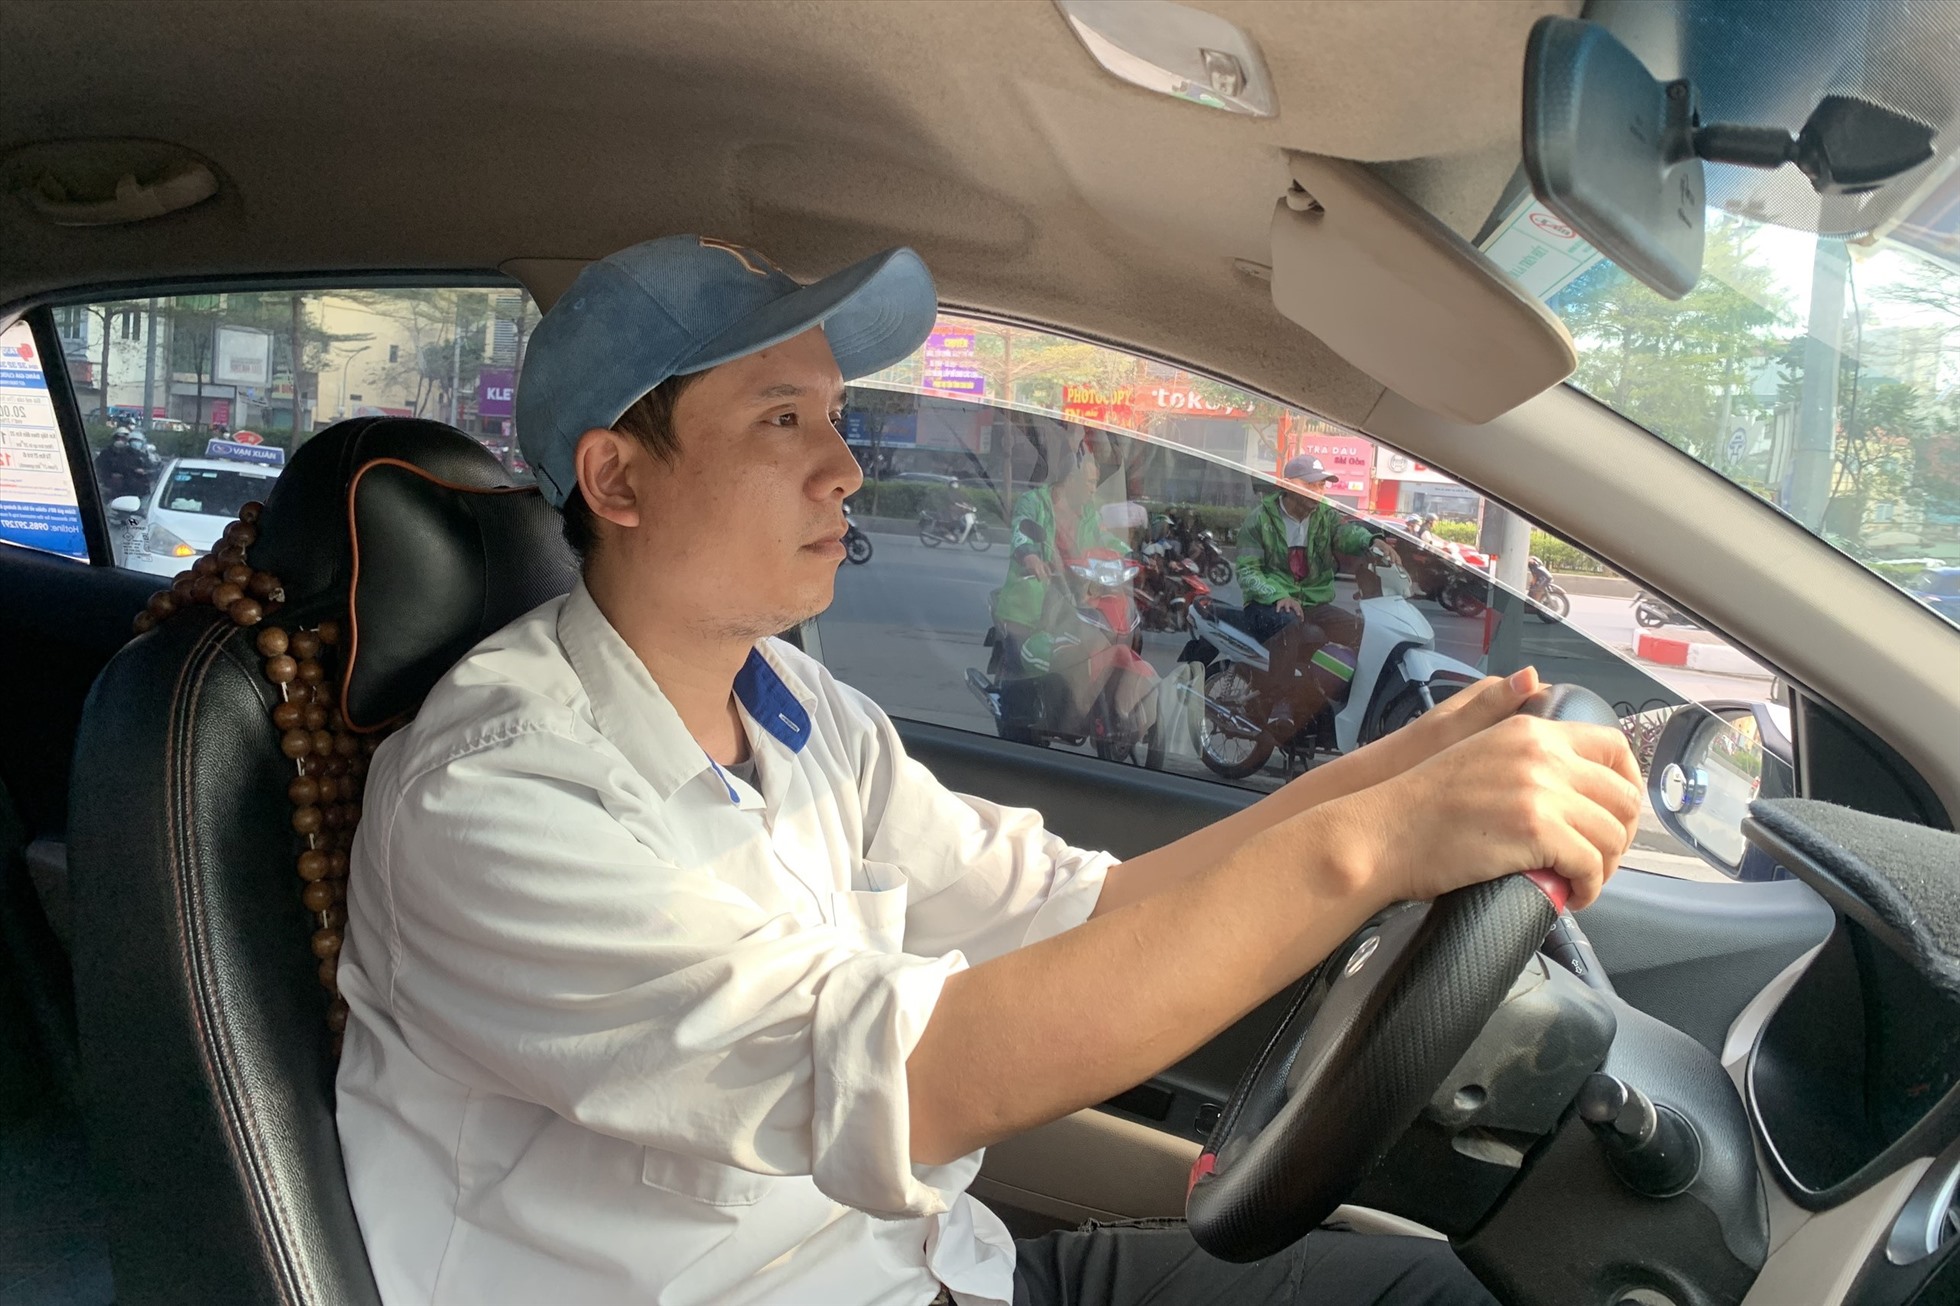 Anh Phạm Văn cầu chia sẻ về những phiền phức mà anh gặp phải với biển cấm đỗ xe taxi.